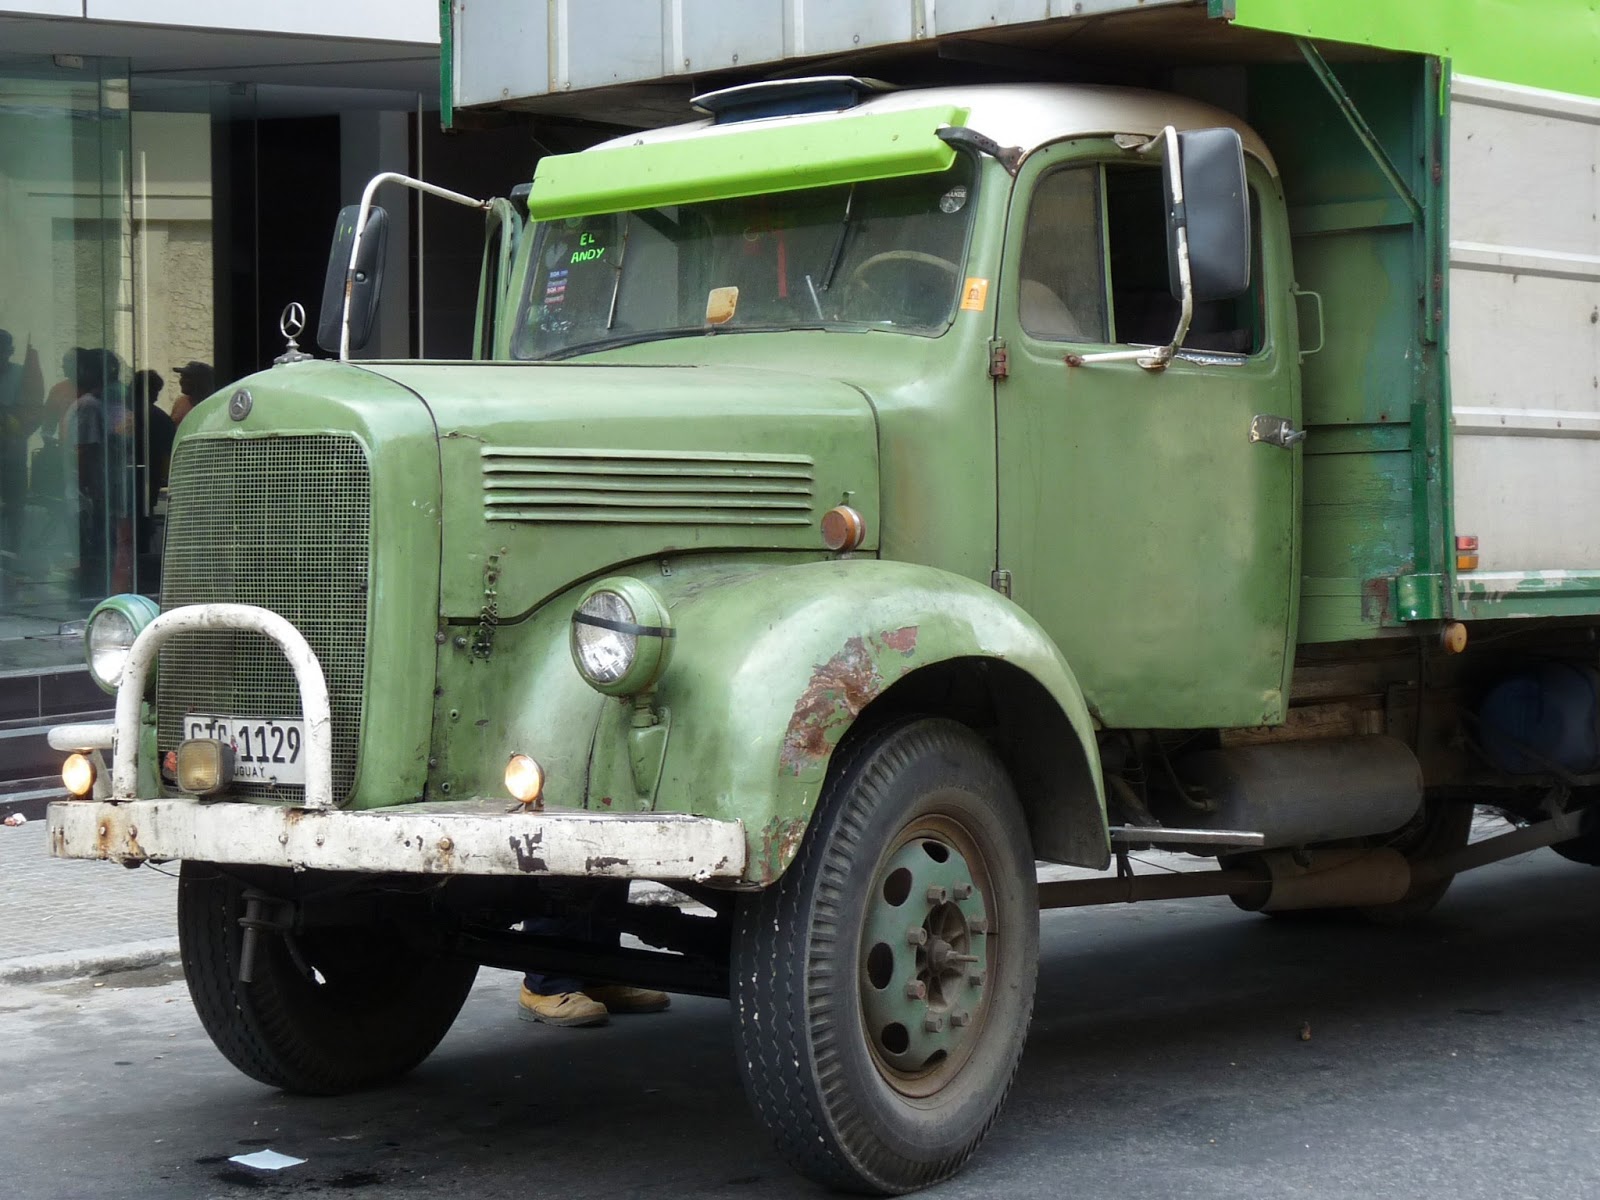 au gr u00e9 des jours en uruguay     les camions d u0026 39 autrefois